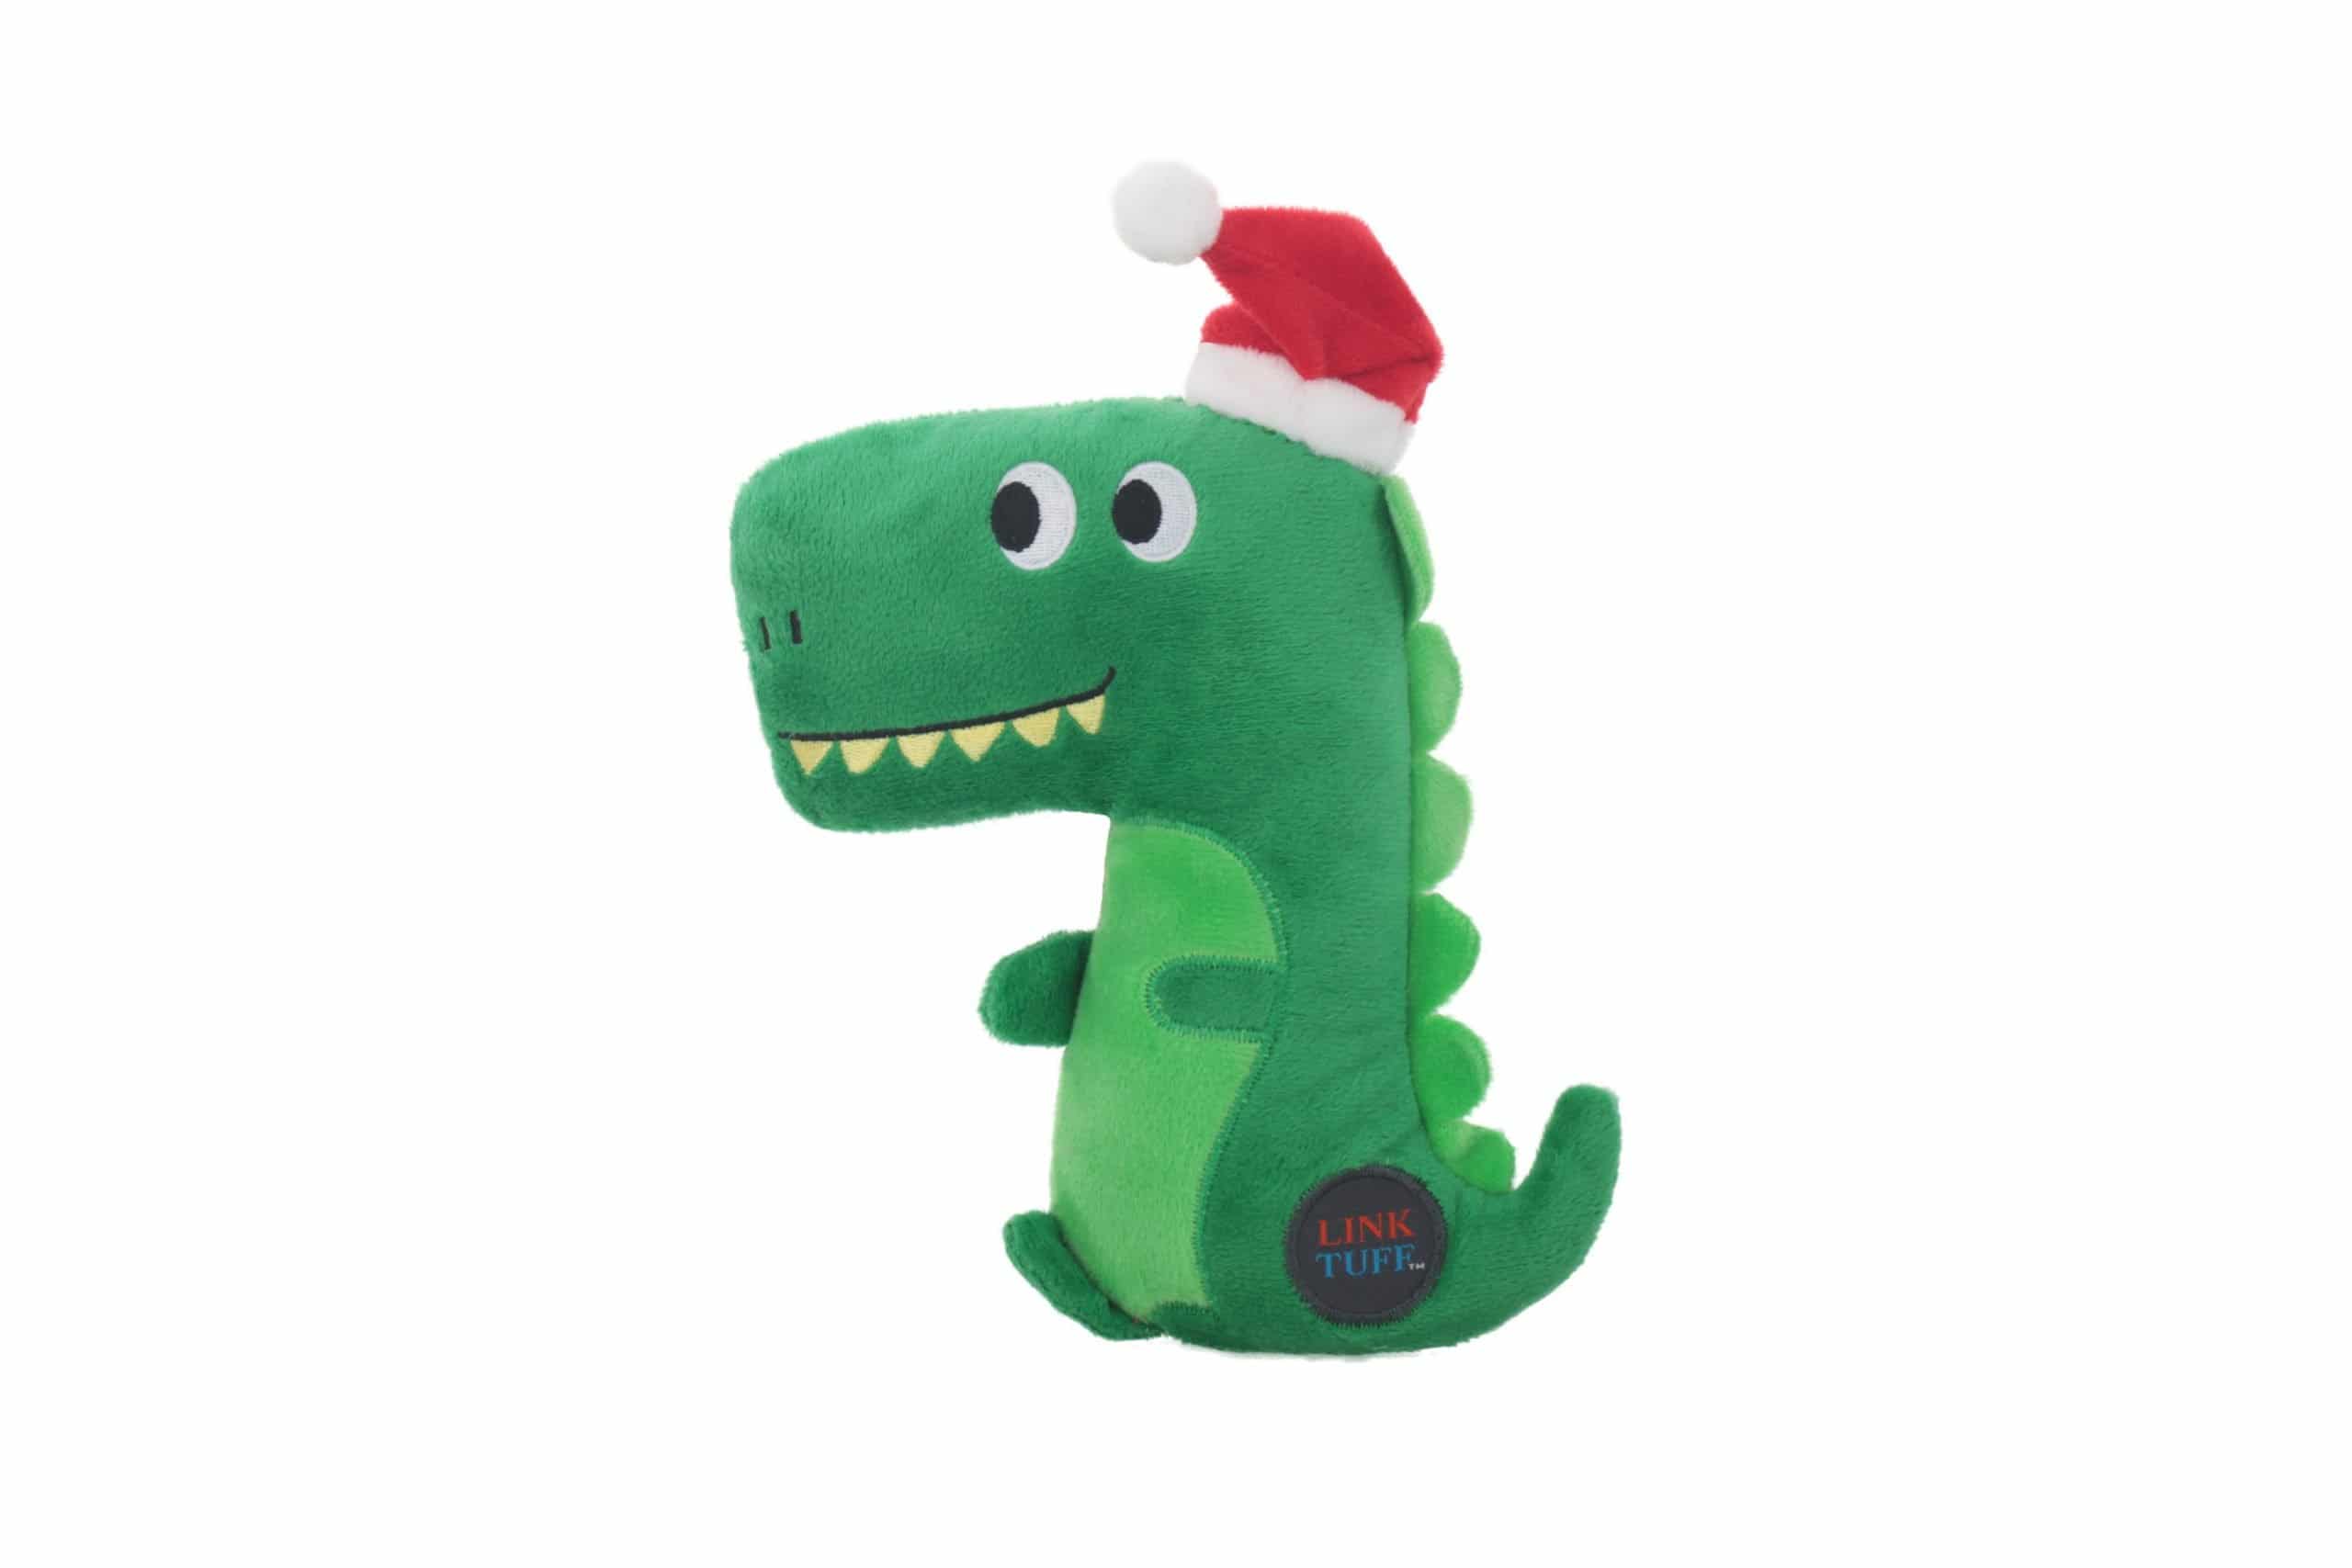 Christmas Dinosaur